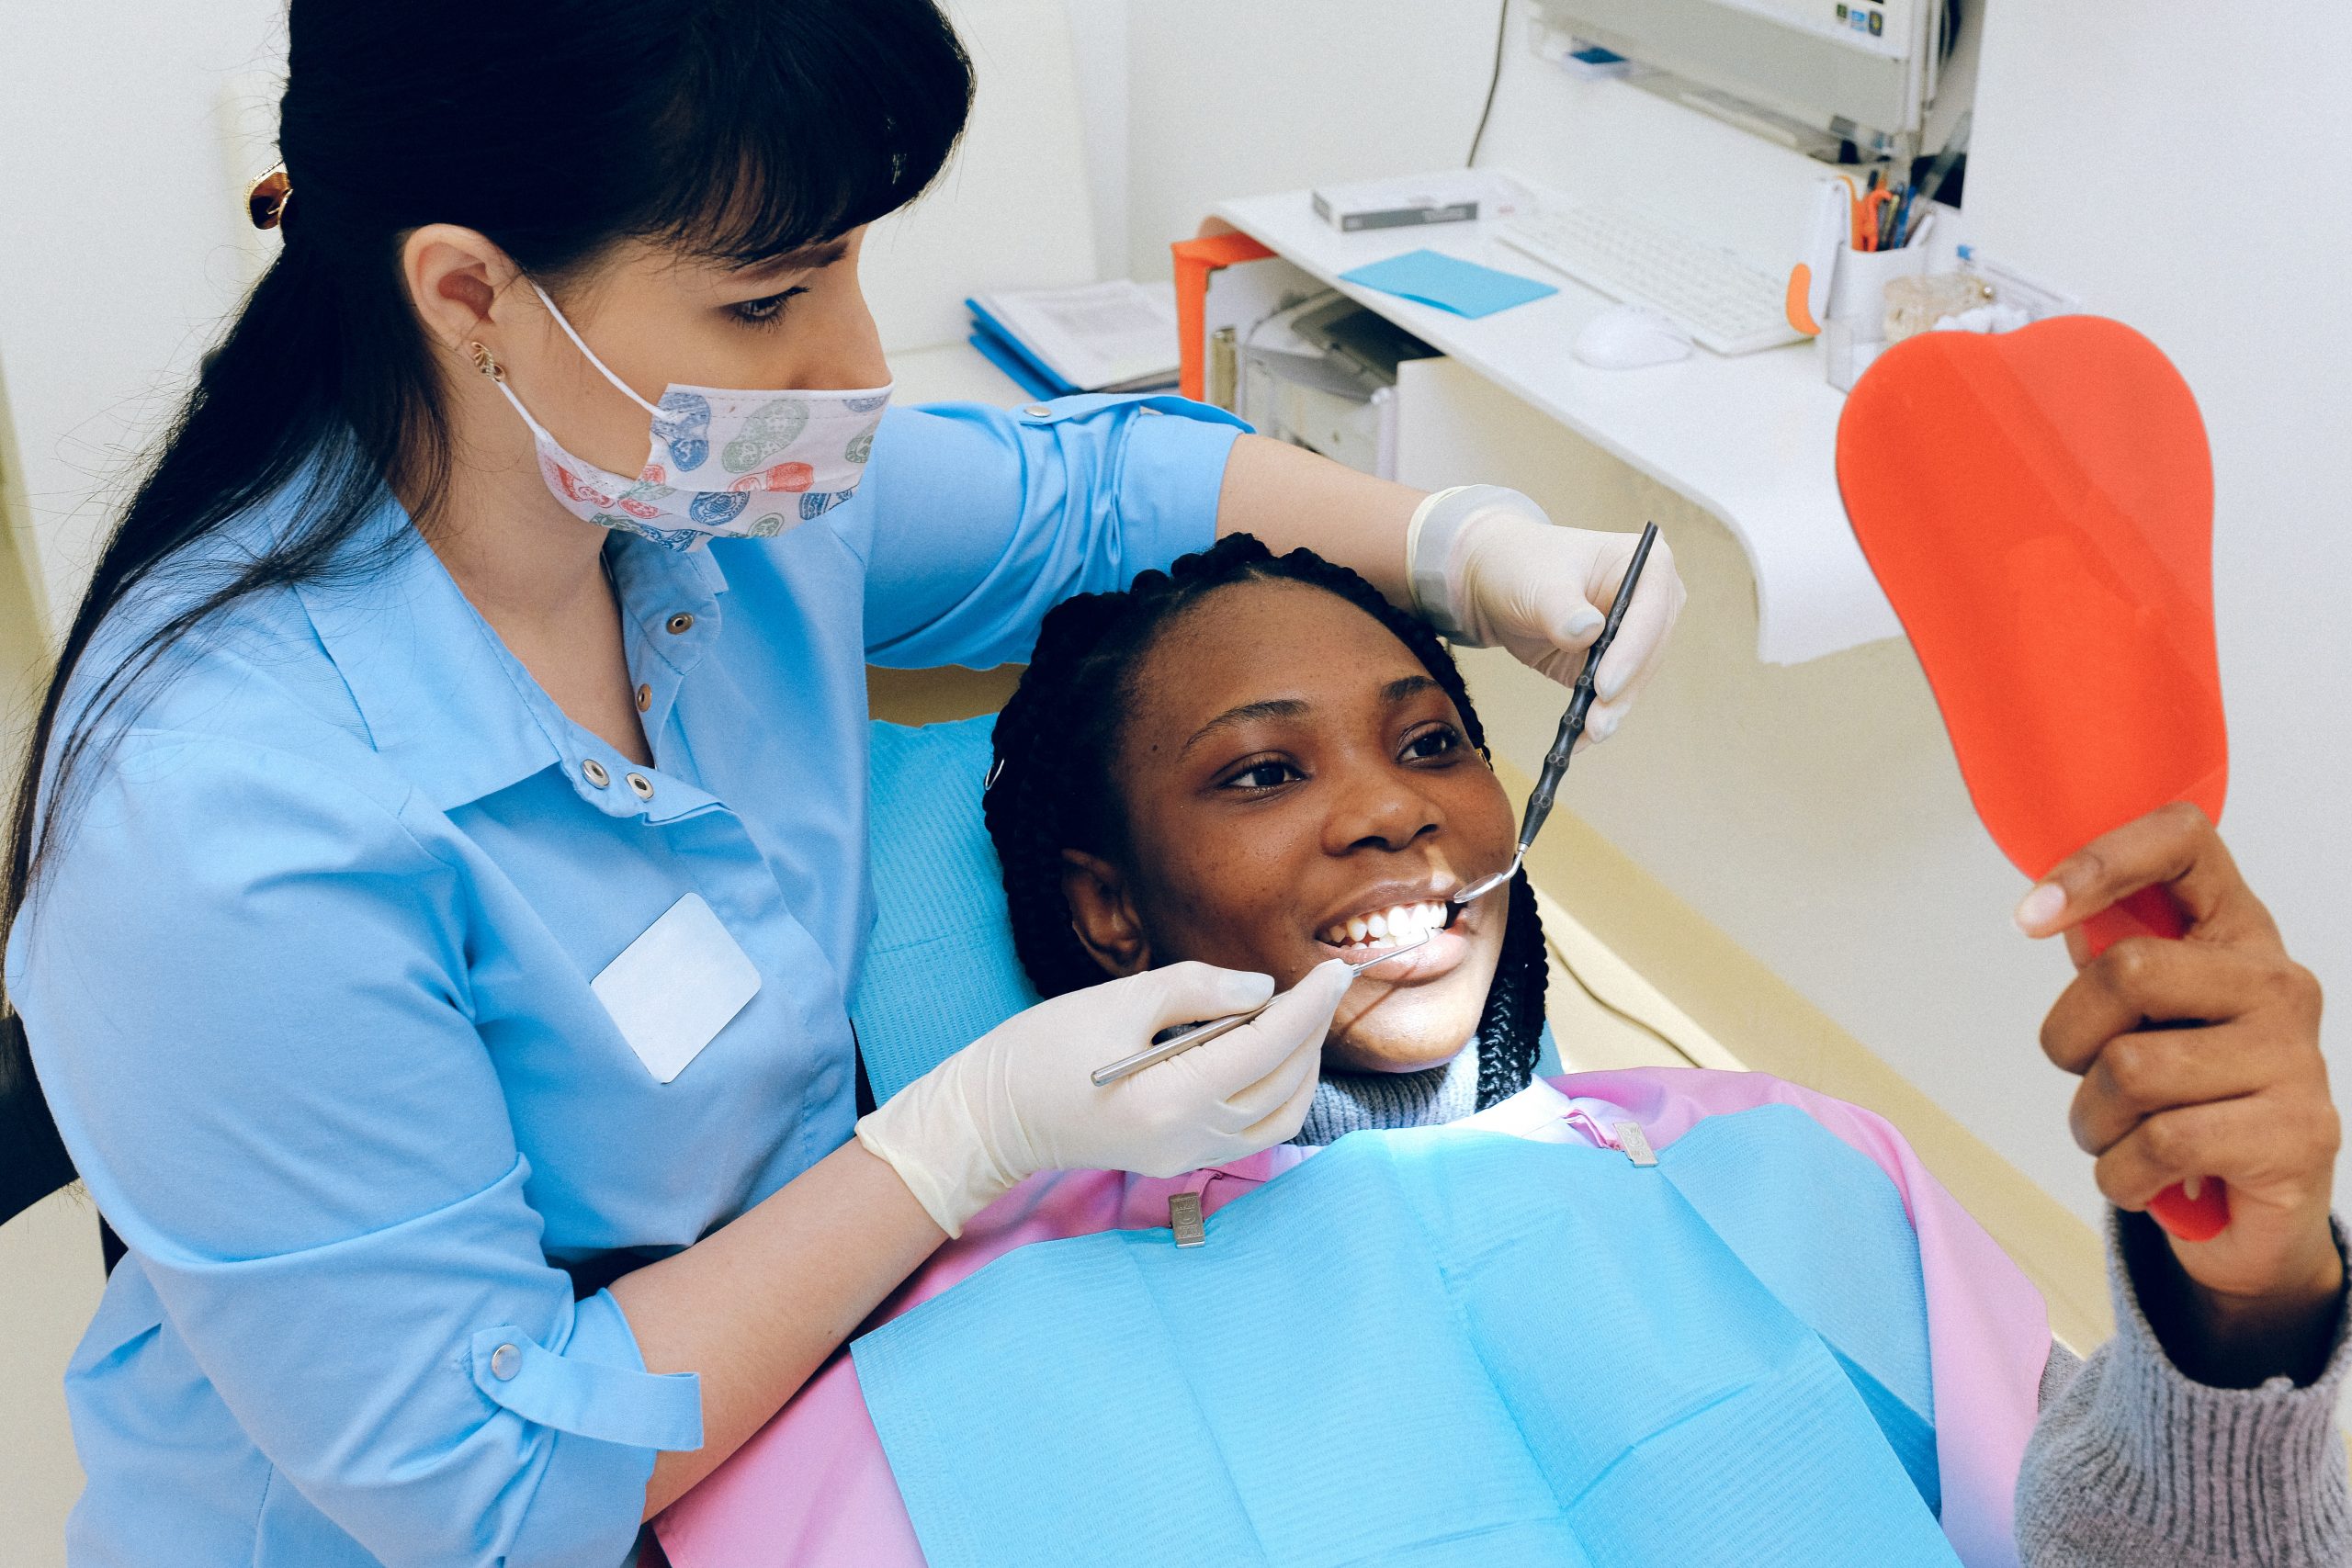 Aparelho invisível: Tecnologia permite melhor tratamento dos dentes com discrição e conforto